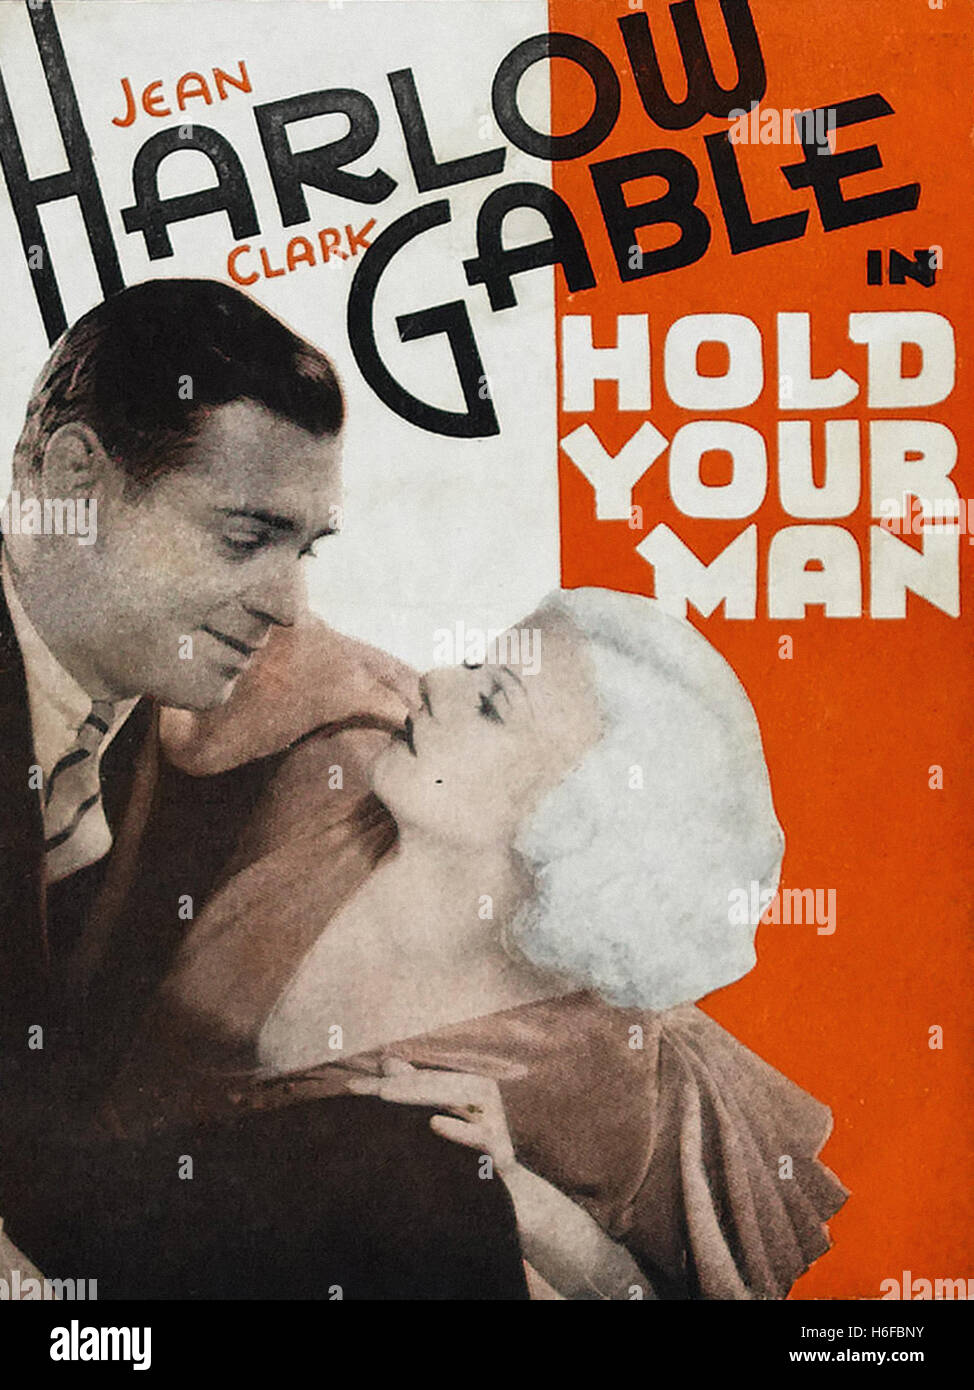 Maintenez votre homme (1933) - Movie Poster - Banque D'Images